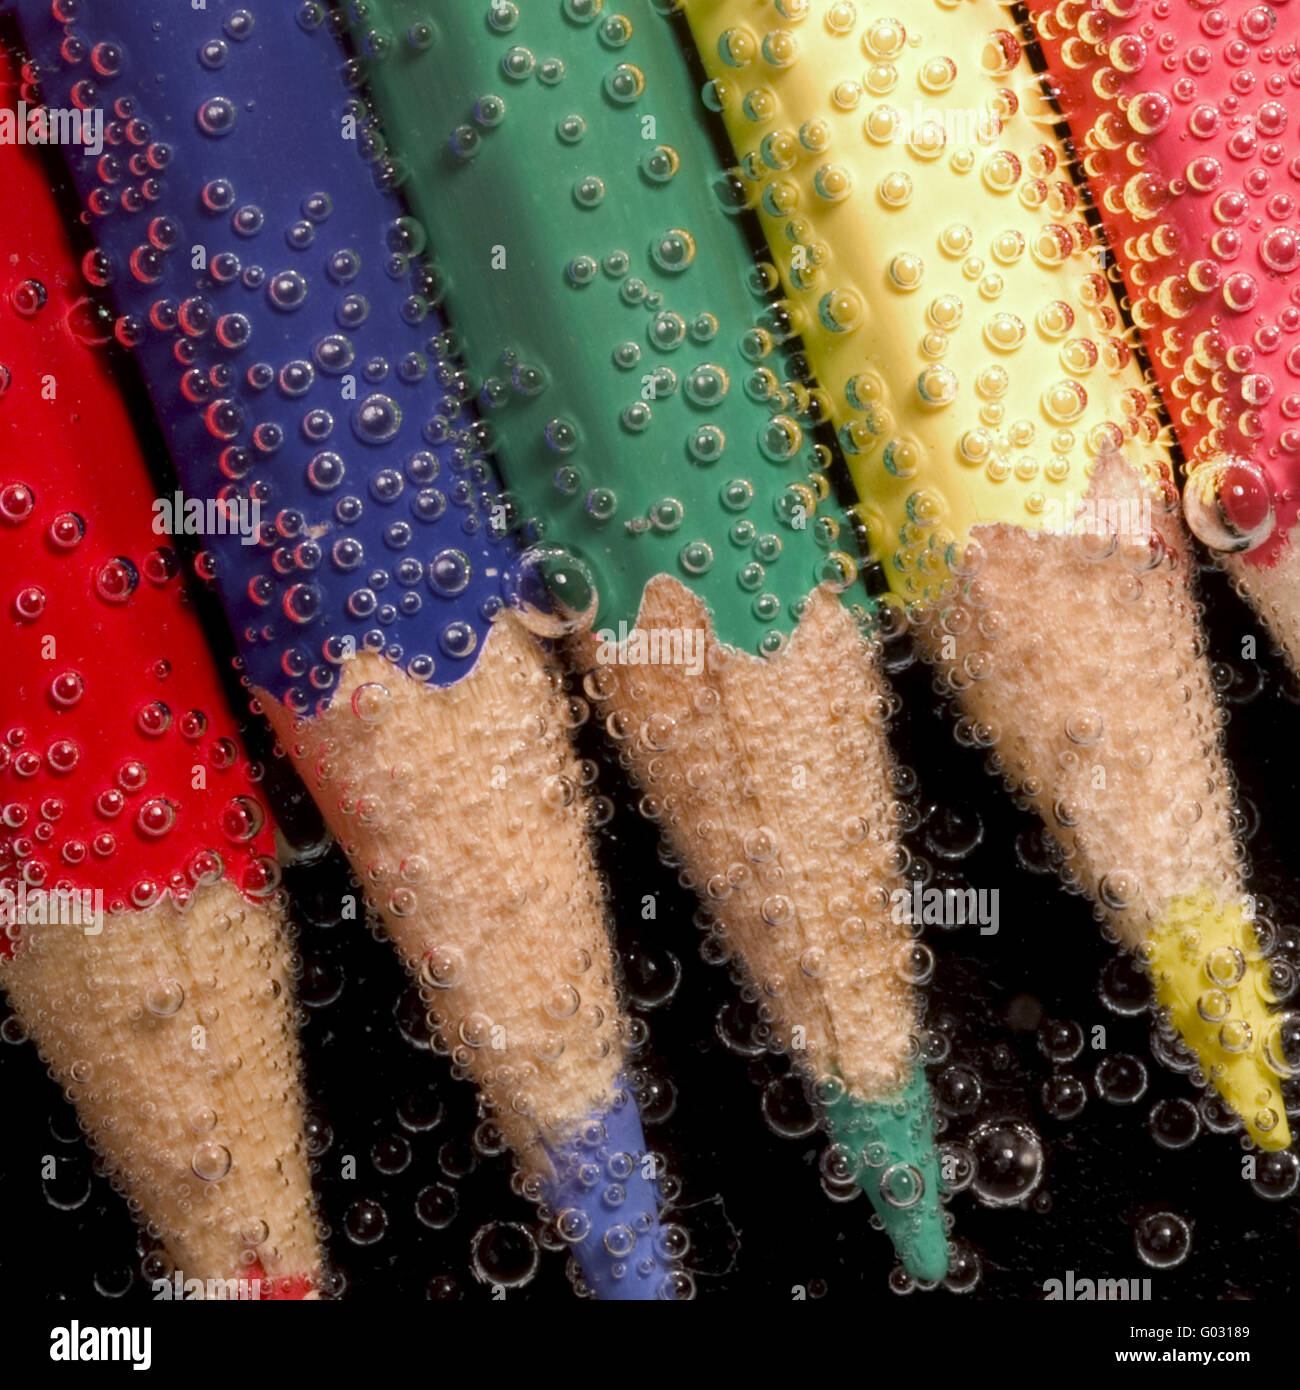 coloured crayon Stock Photo